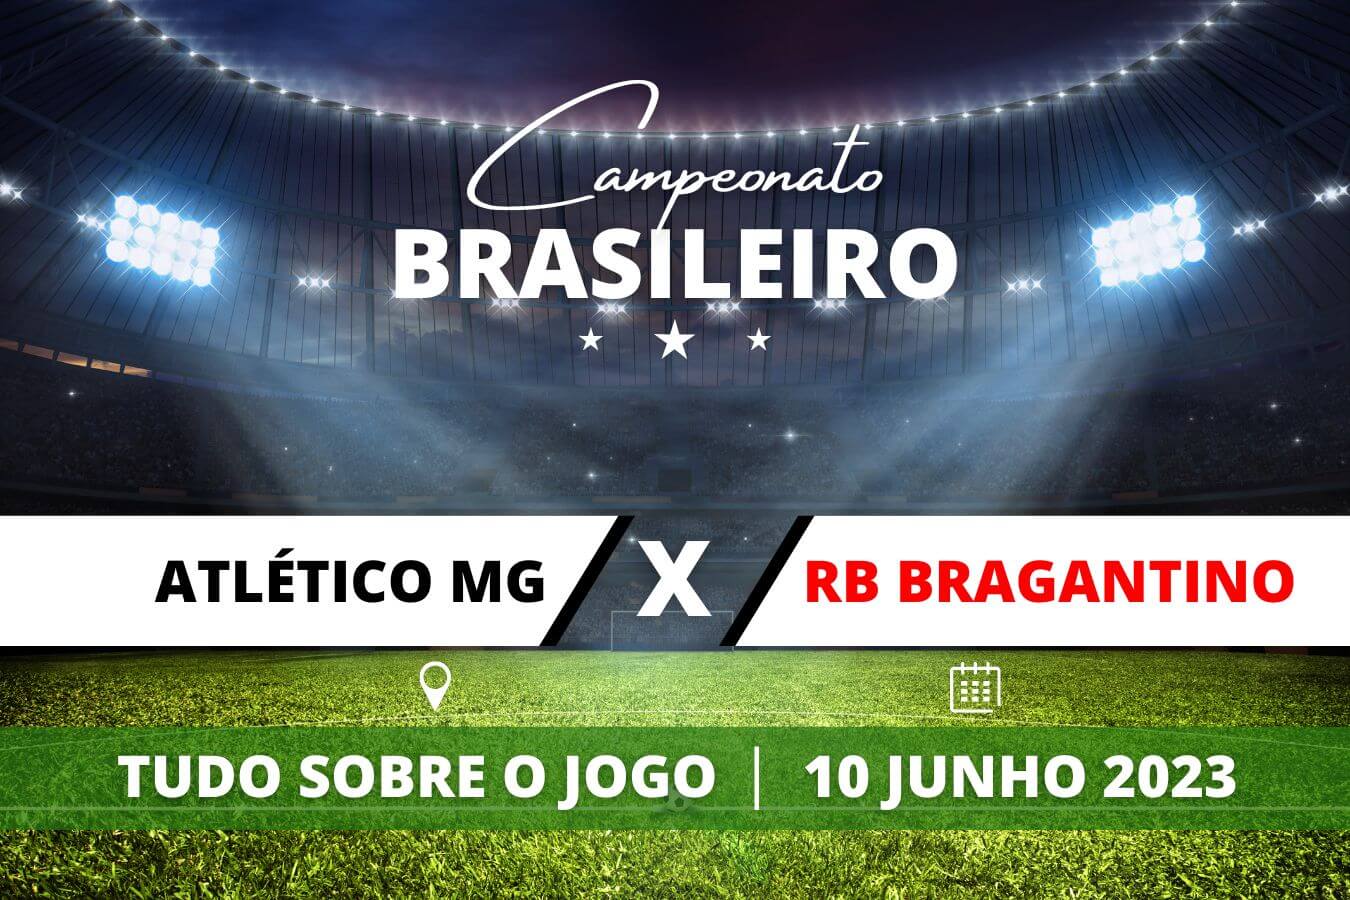 Altético-MG x RB Bragantino pela 10ª rodada do Campeonato Brasileiro. Saiba tudo sobre o jogo: escalações prováveis, onde assistir, horário e venda de ingressos